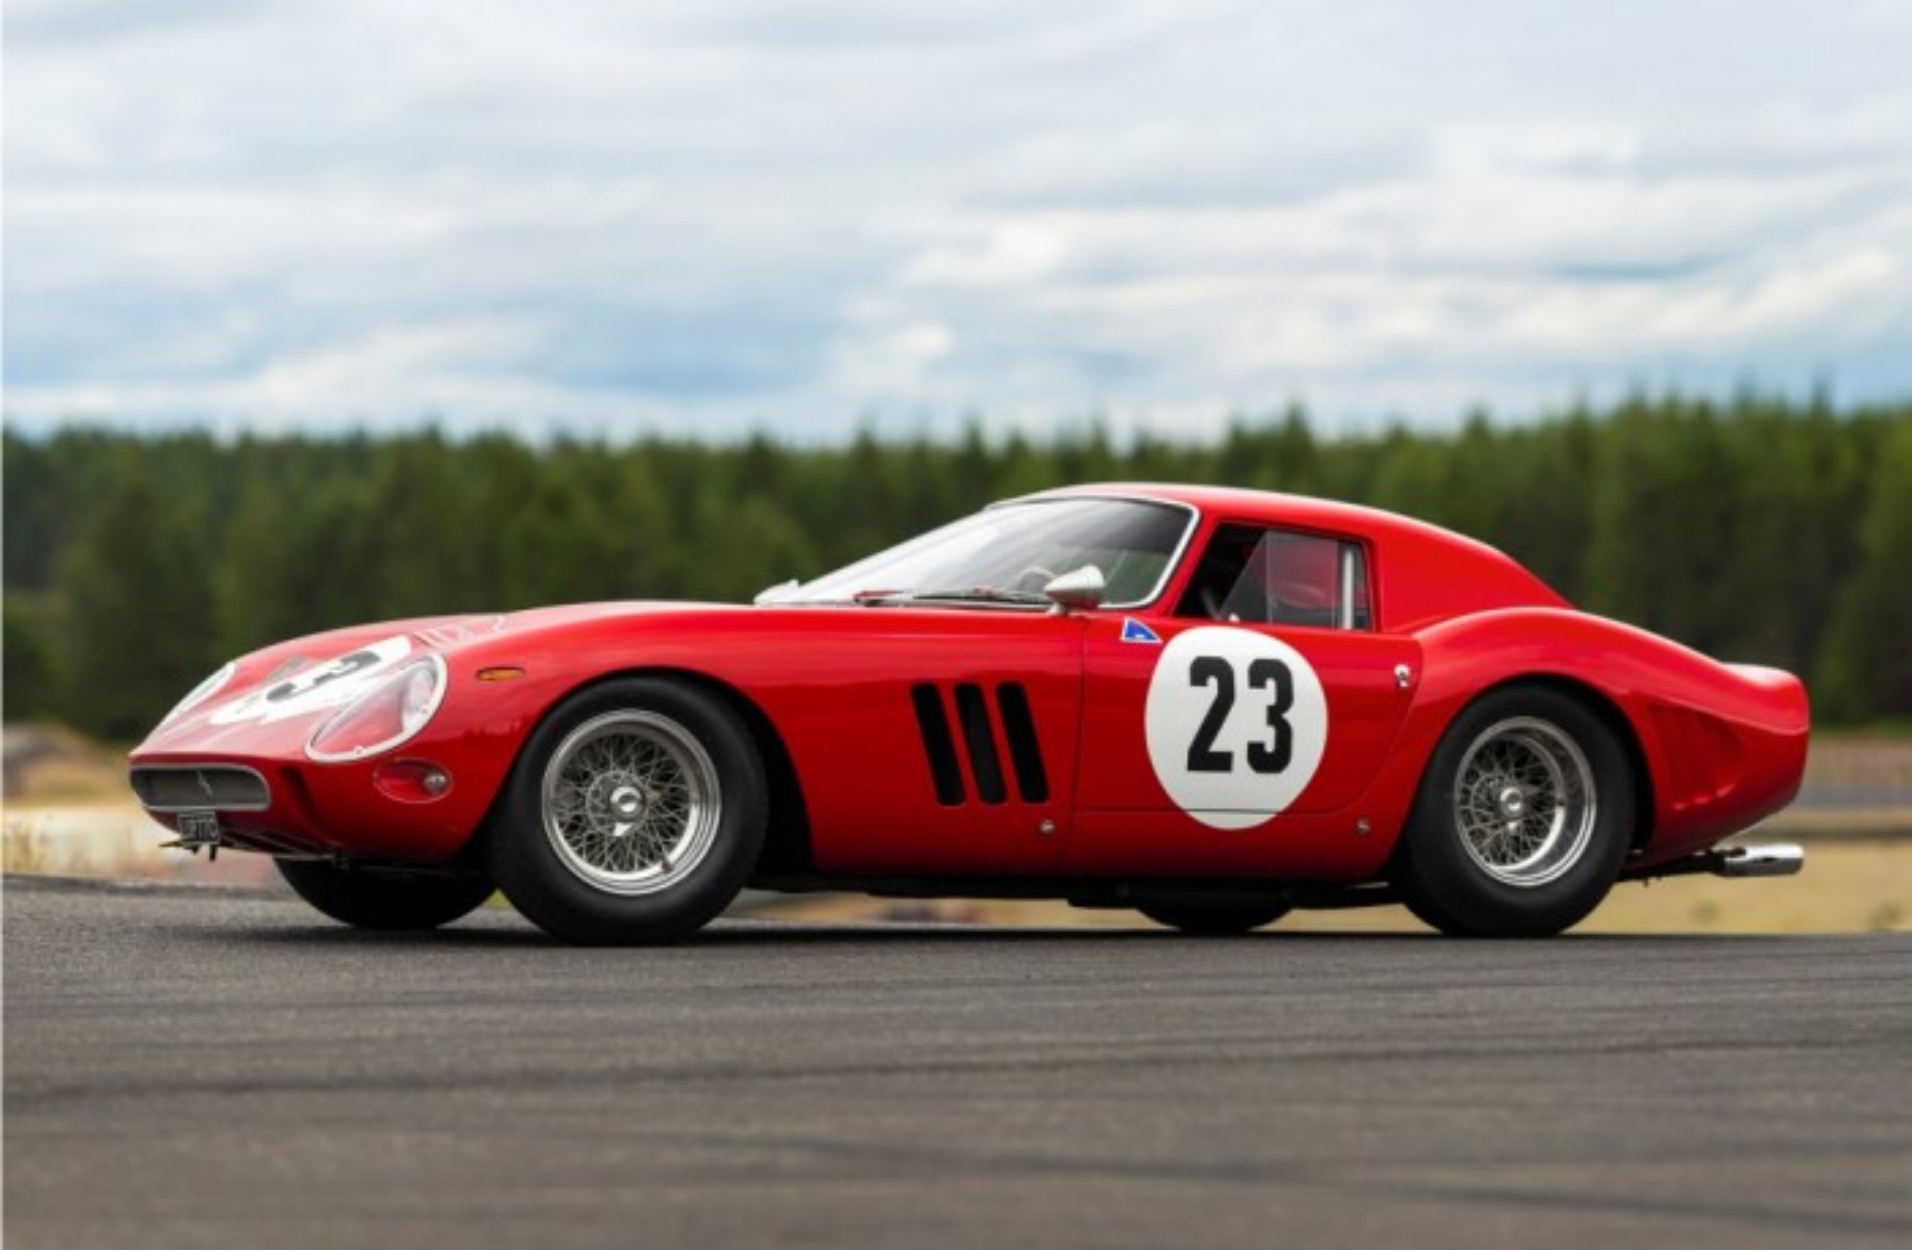 Οι λάτρεις της Ferrari θα τραβάνε τα μαλλιά τους μόλις δουν αυτή την GTO!